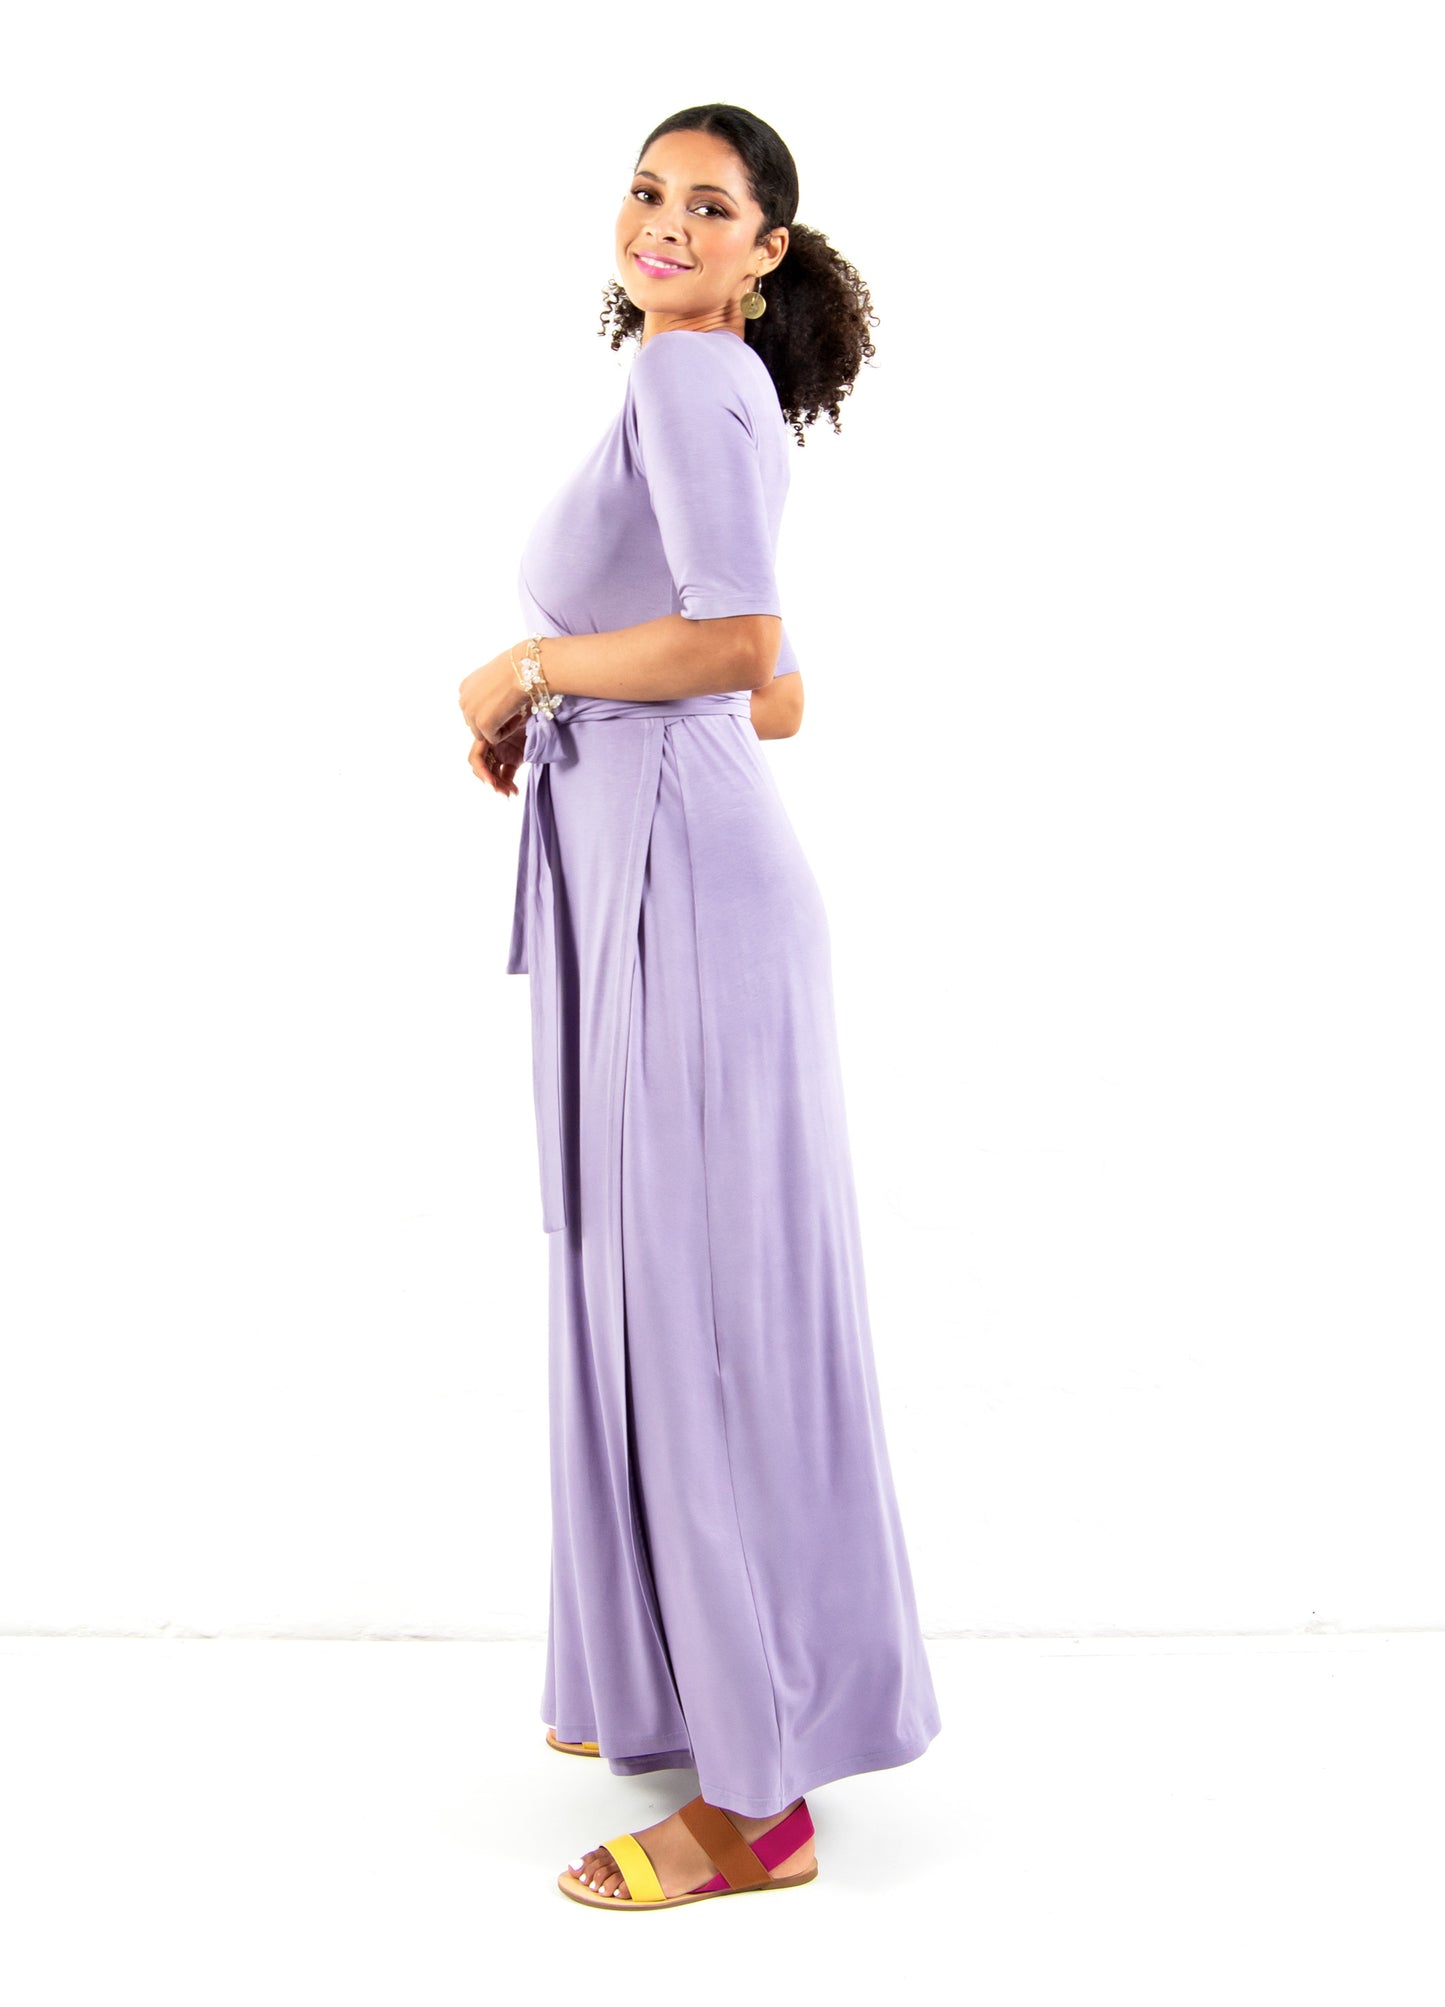 Magnolia maxi wrap dress in Lavender size 32